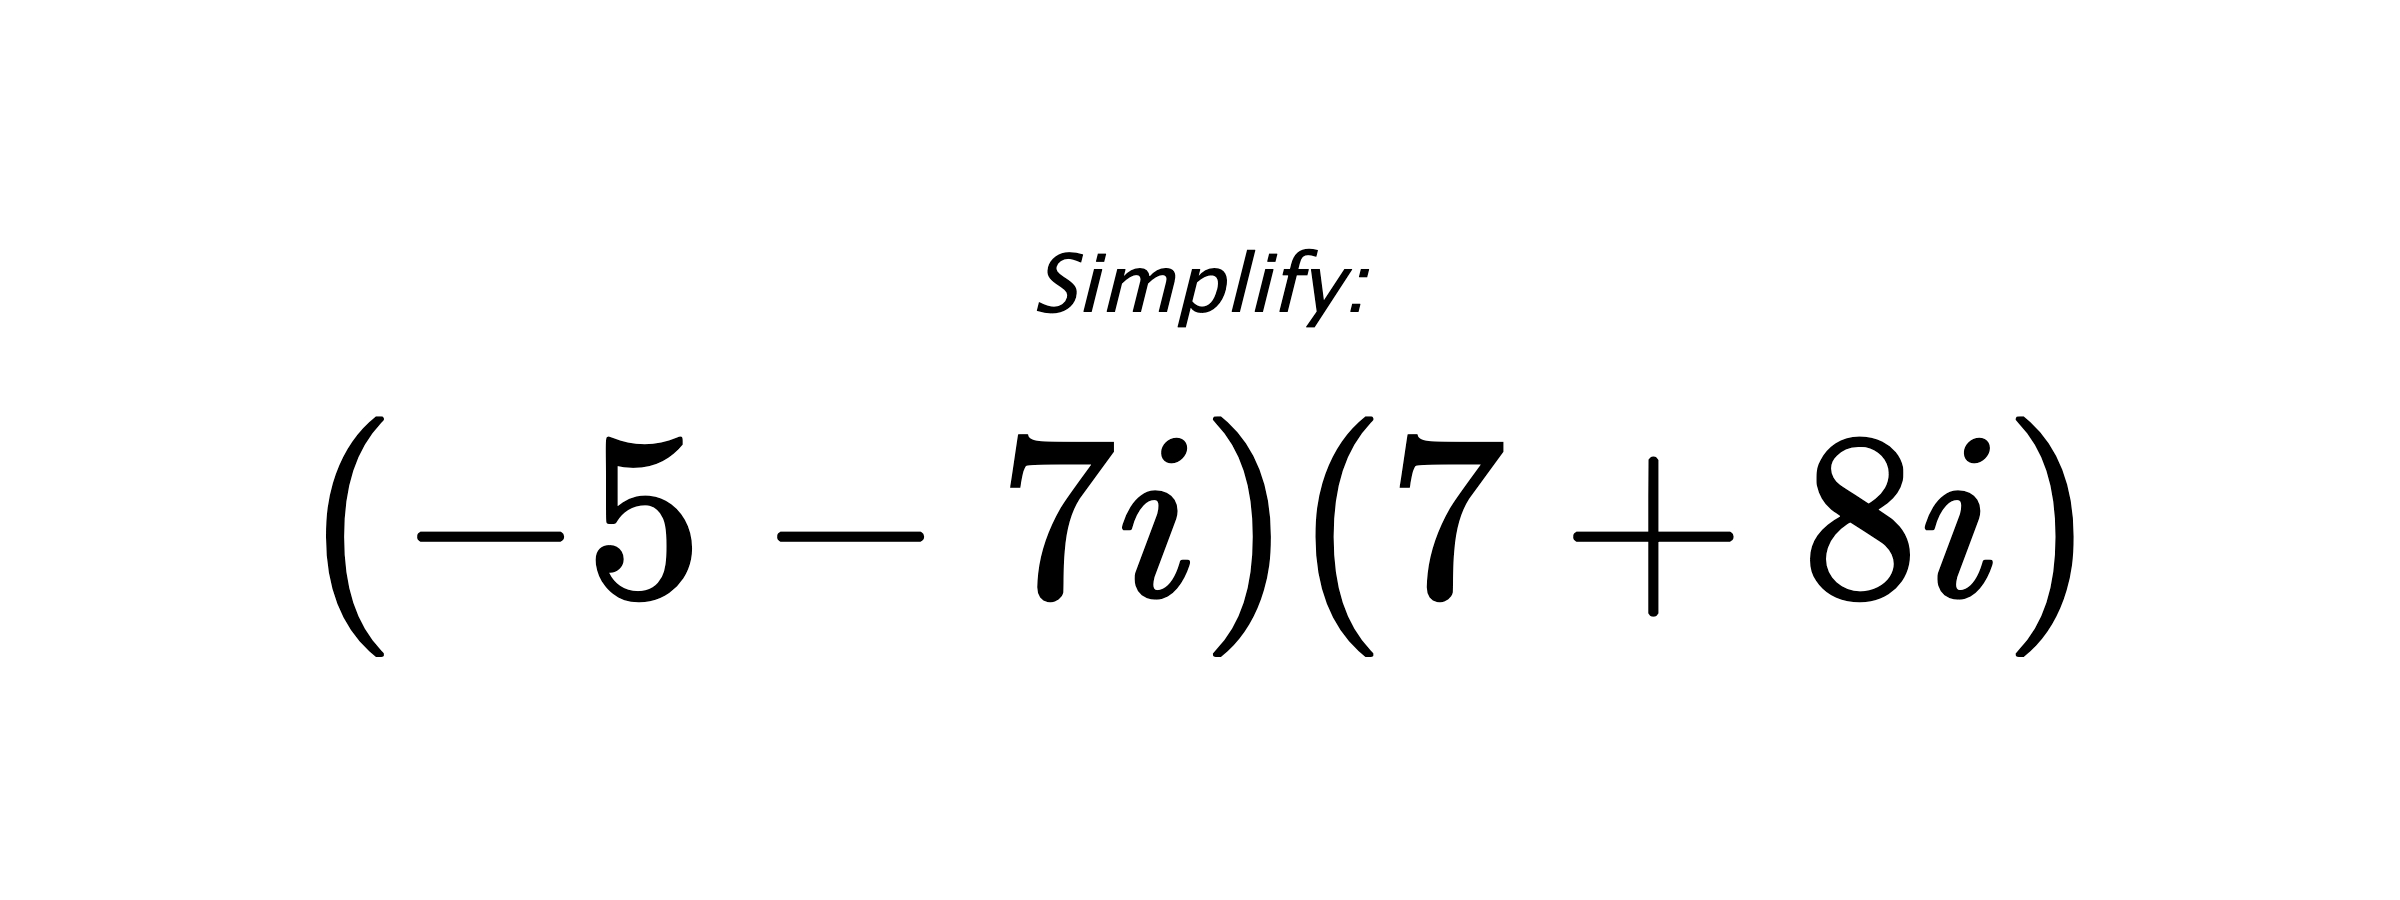 Simplify: $ (-5-7i)(7+8i) $